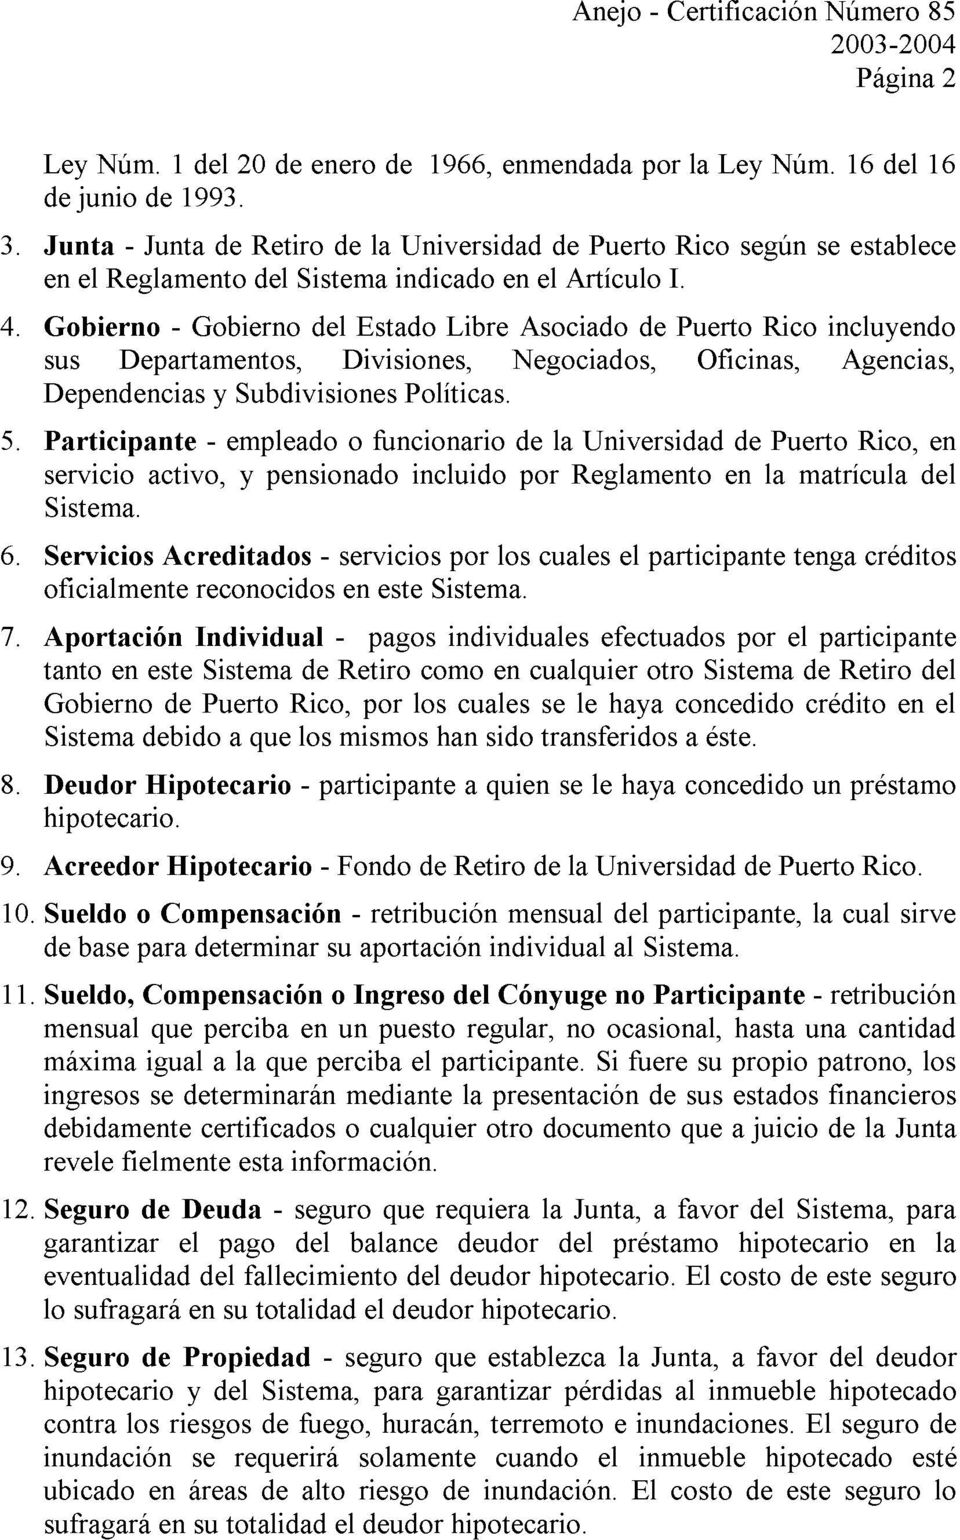 Gobierno - Gobierno del Estado Libre Asociado de Puerto Rico incluyendo sus Departamentos, Divisiones, Negociados, Oficinas, Agencias, Dependencias y Subdivisiones Políticas.